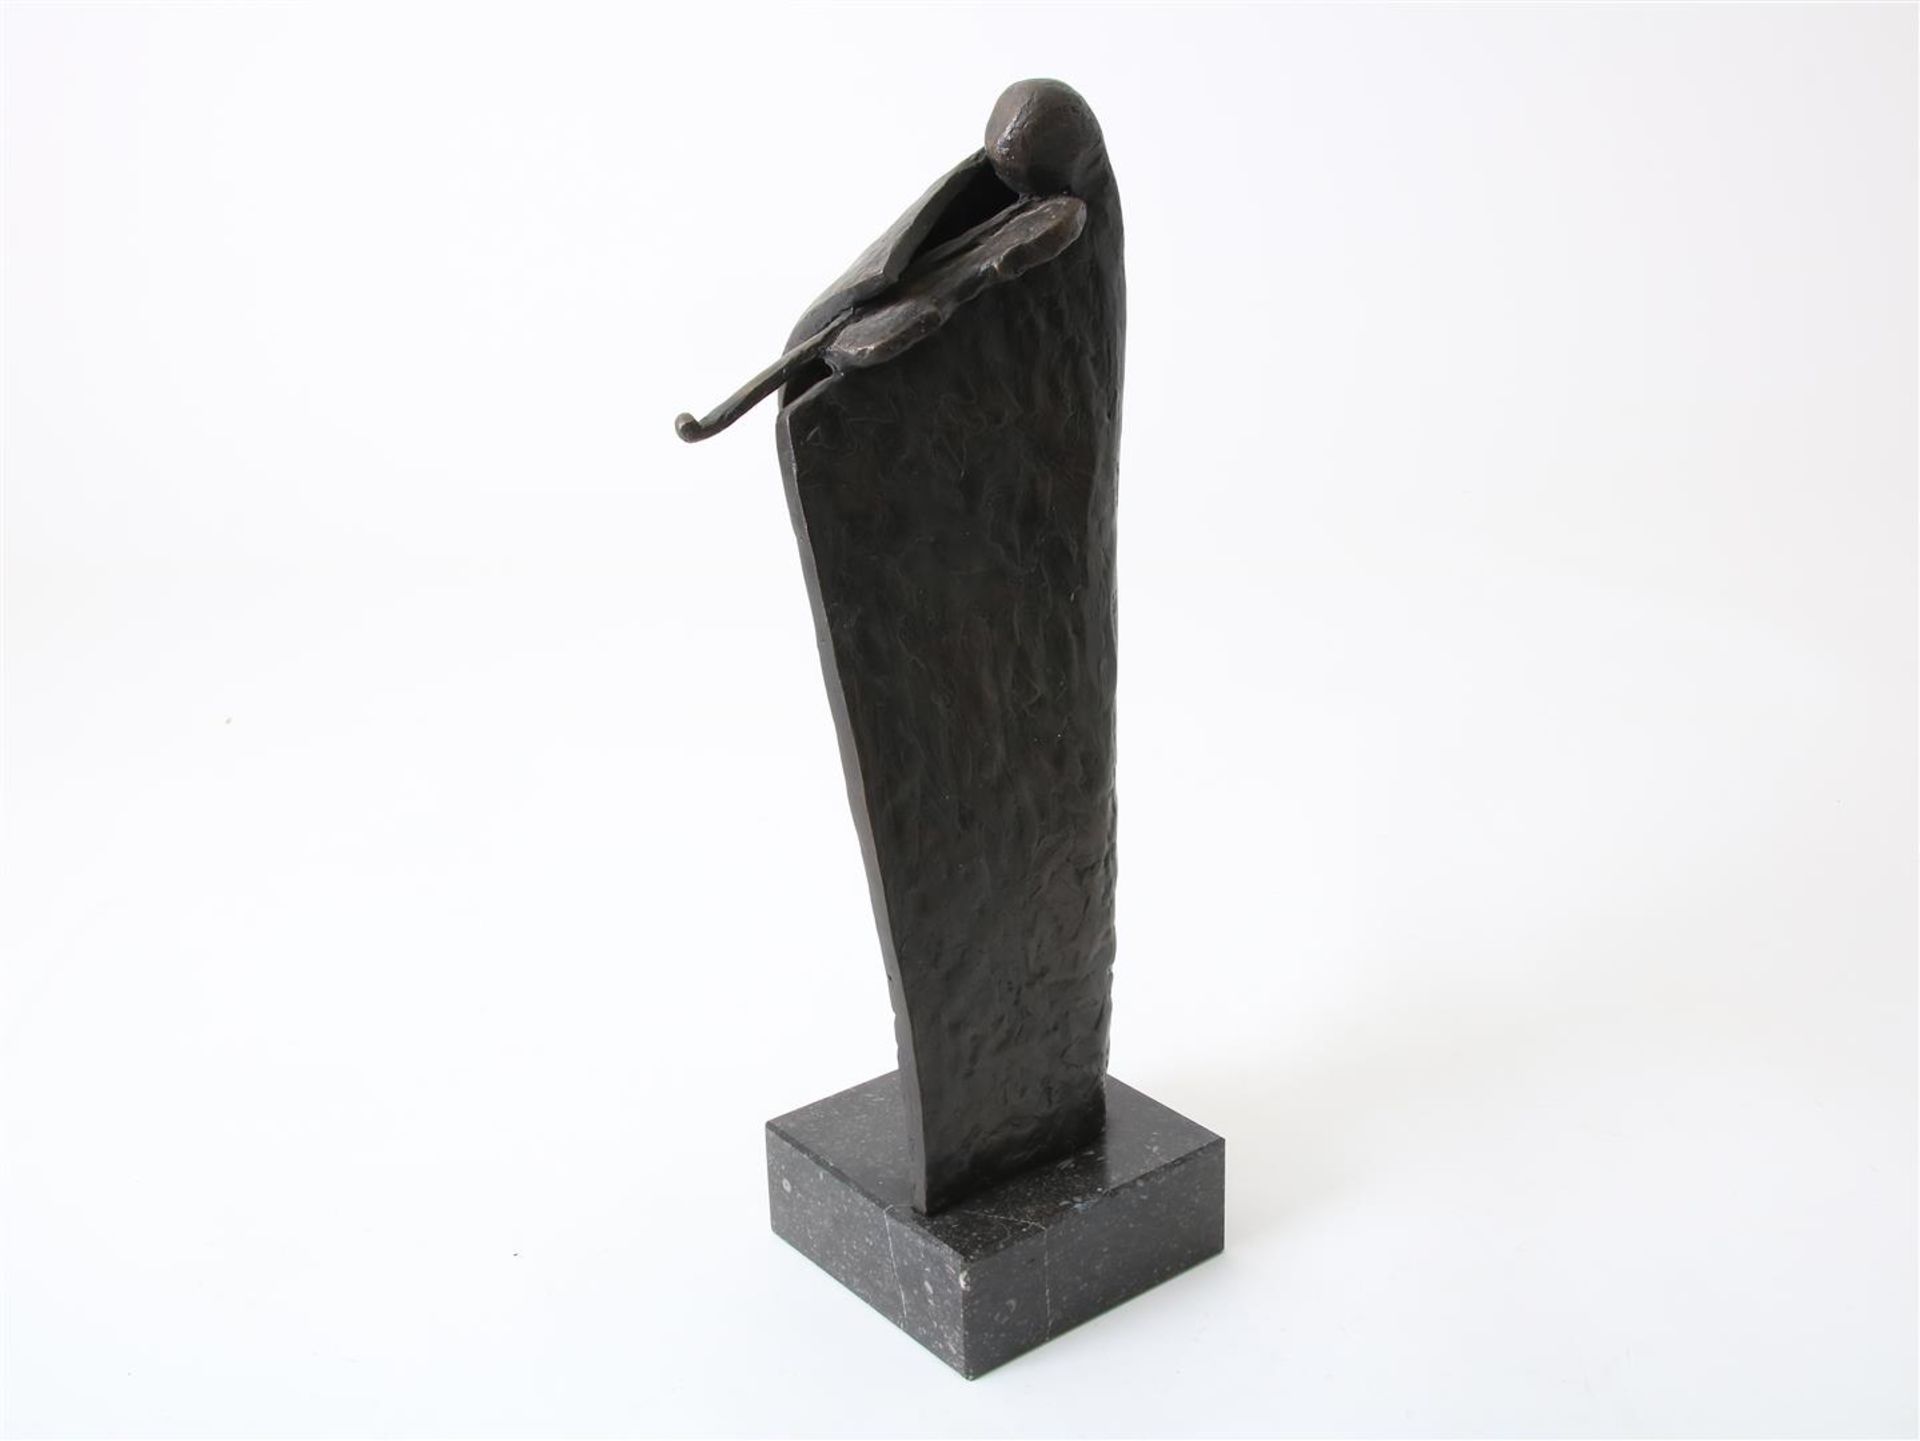  Renée Leusden, bronze sculpture